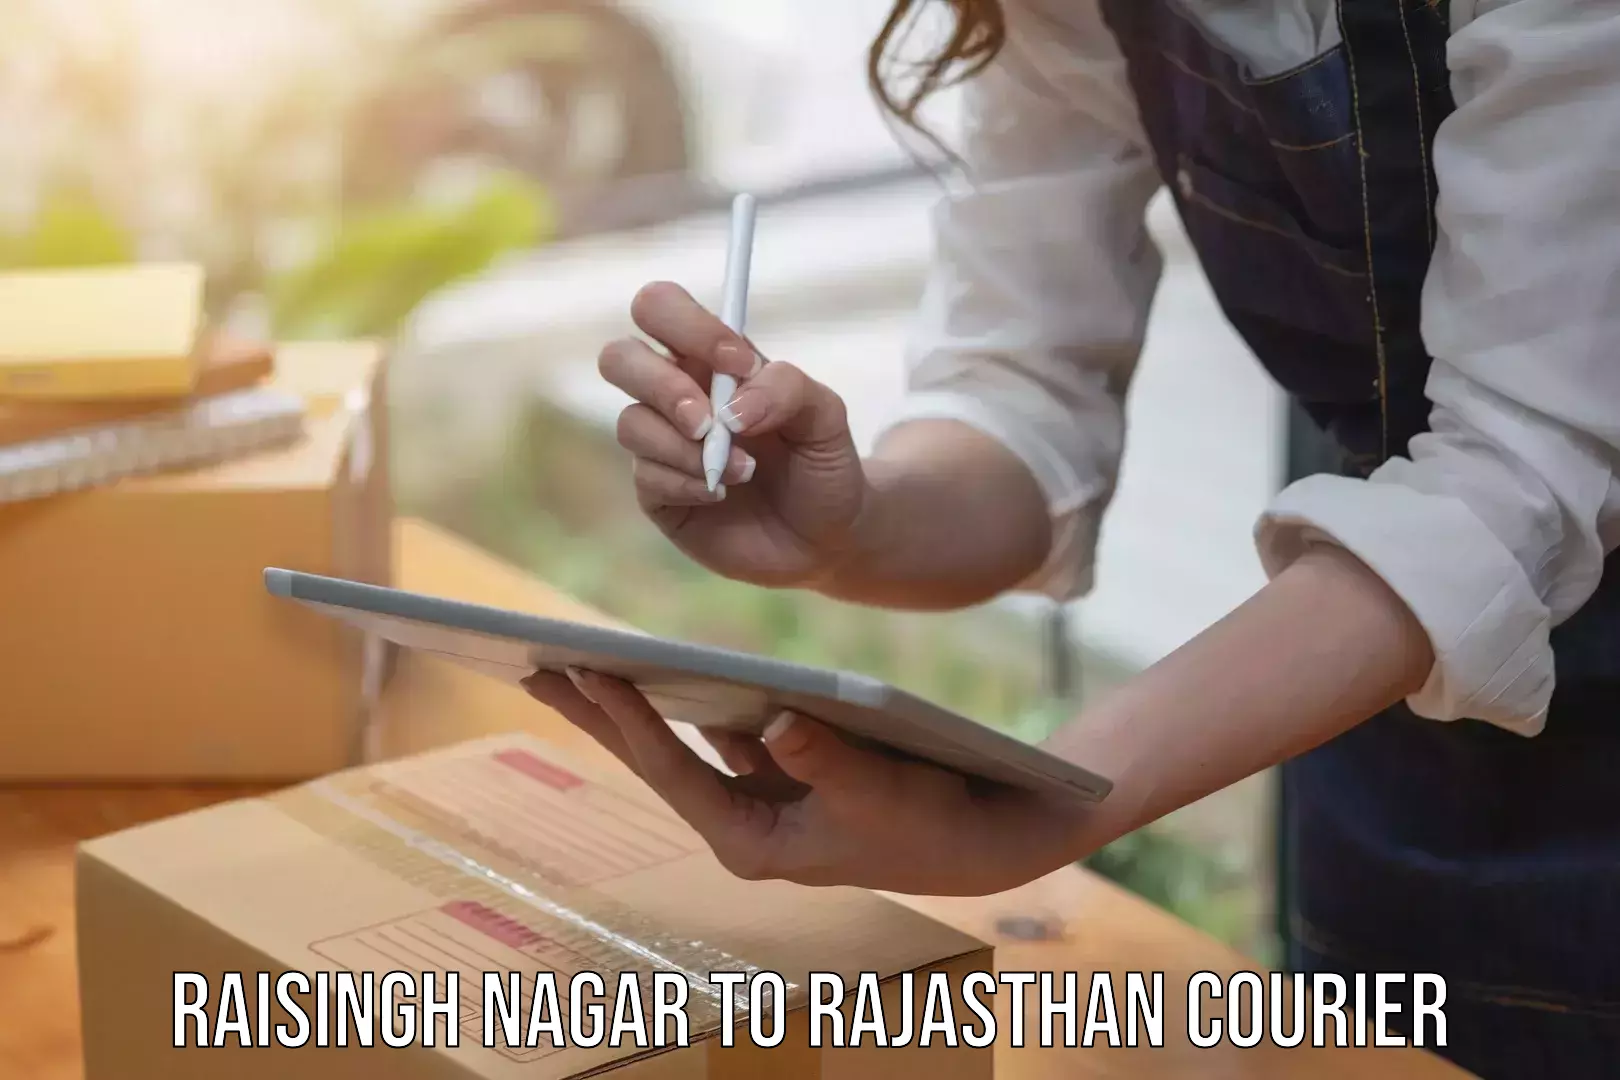 Nationwide courier service Raisingh Nagar to Raisingh Nagar